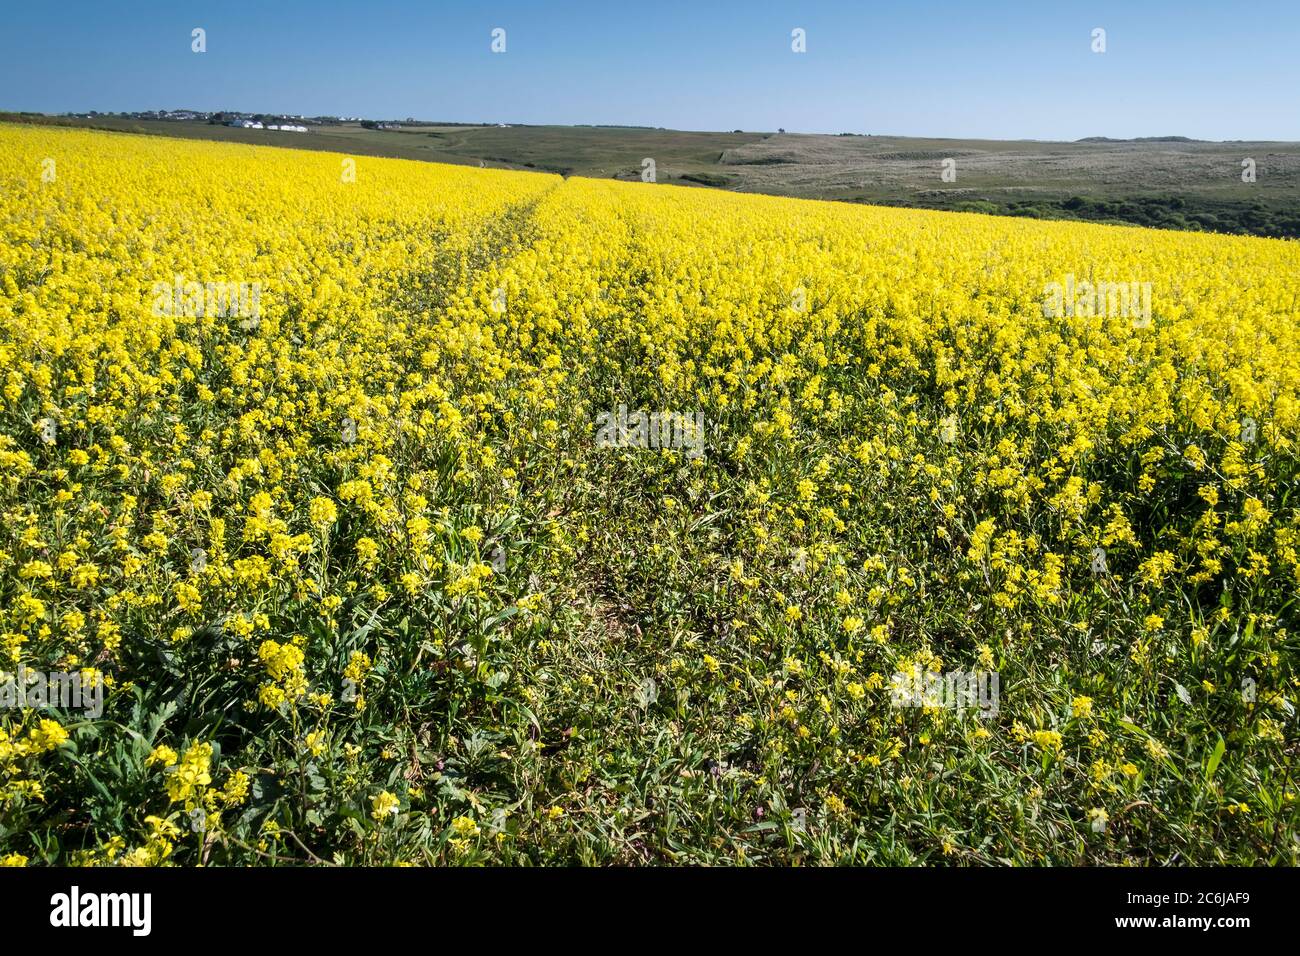 Le jaune intense de la moutarde sauvage Sinapsis avensis poussant dans un champ au champs arables Projet sur West Pentire à Newquay en Cornouailles. Banque D'Images